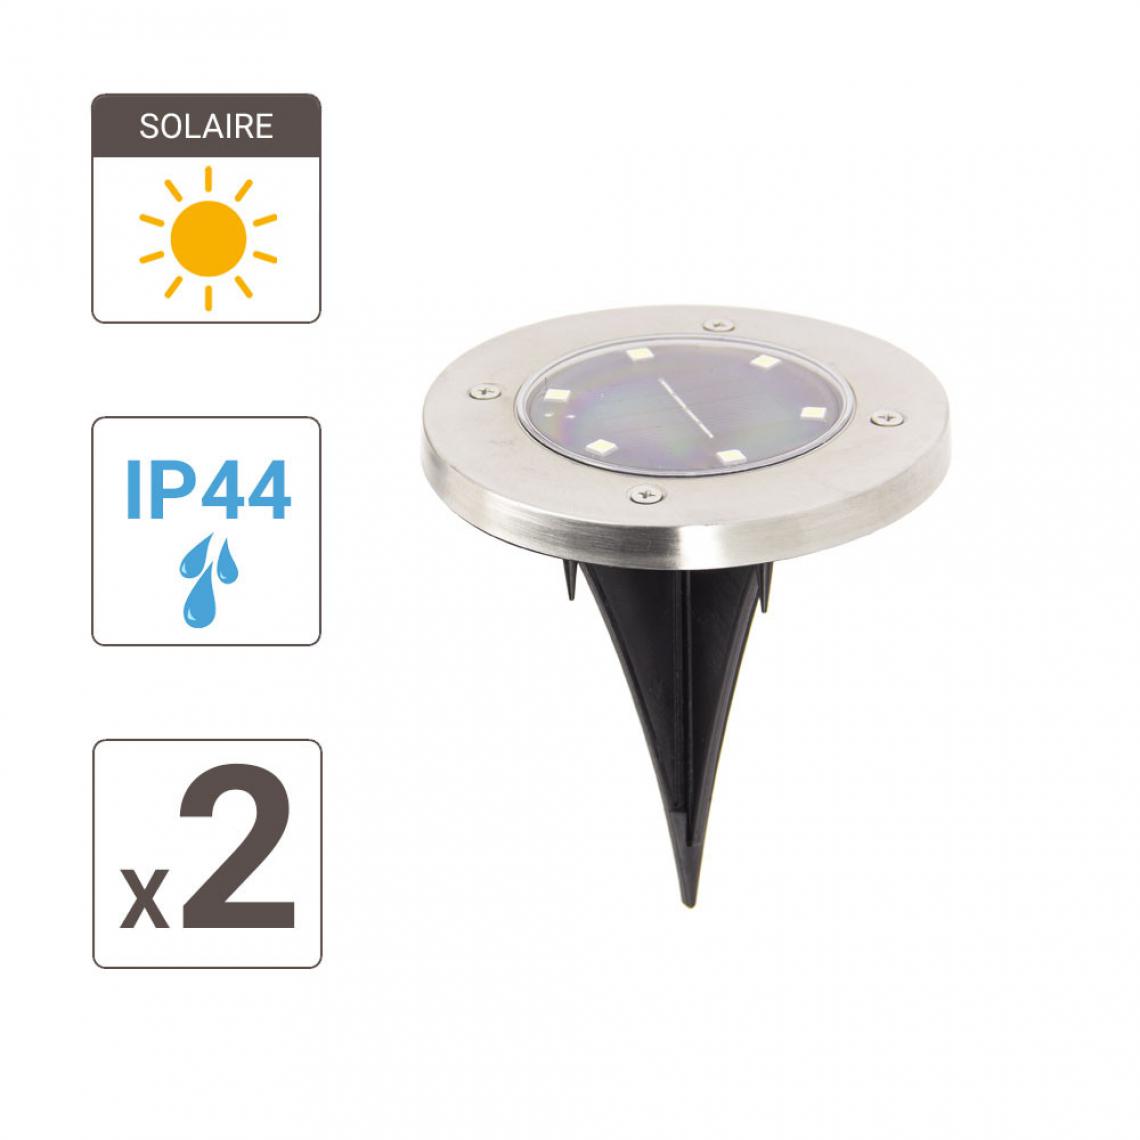 Xanlite - Lot de 2 Spots Solaires 6 LED Blanc froid IP44 8h d'autonomie - Eclairage solaire